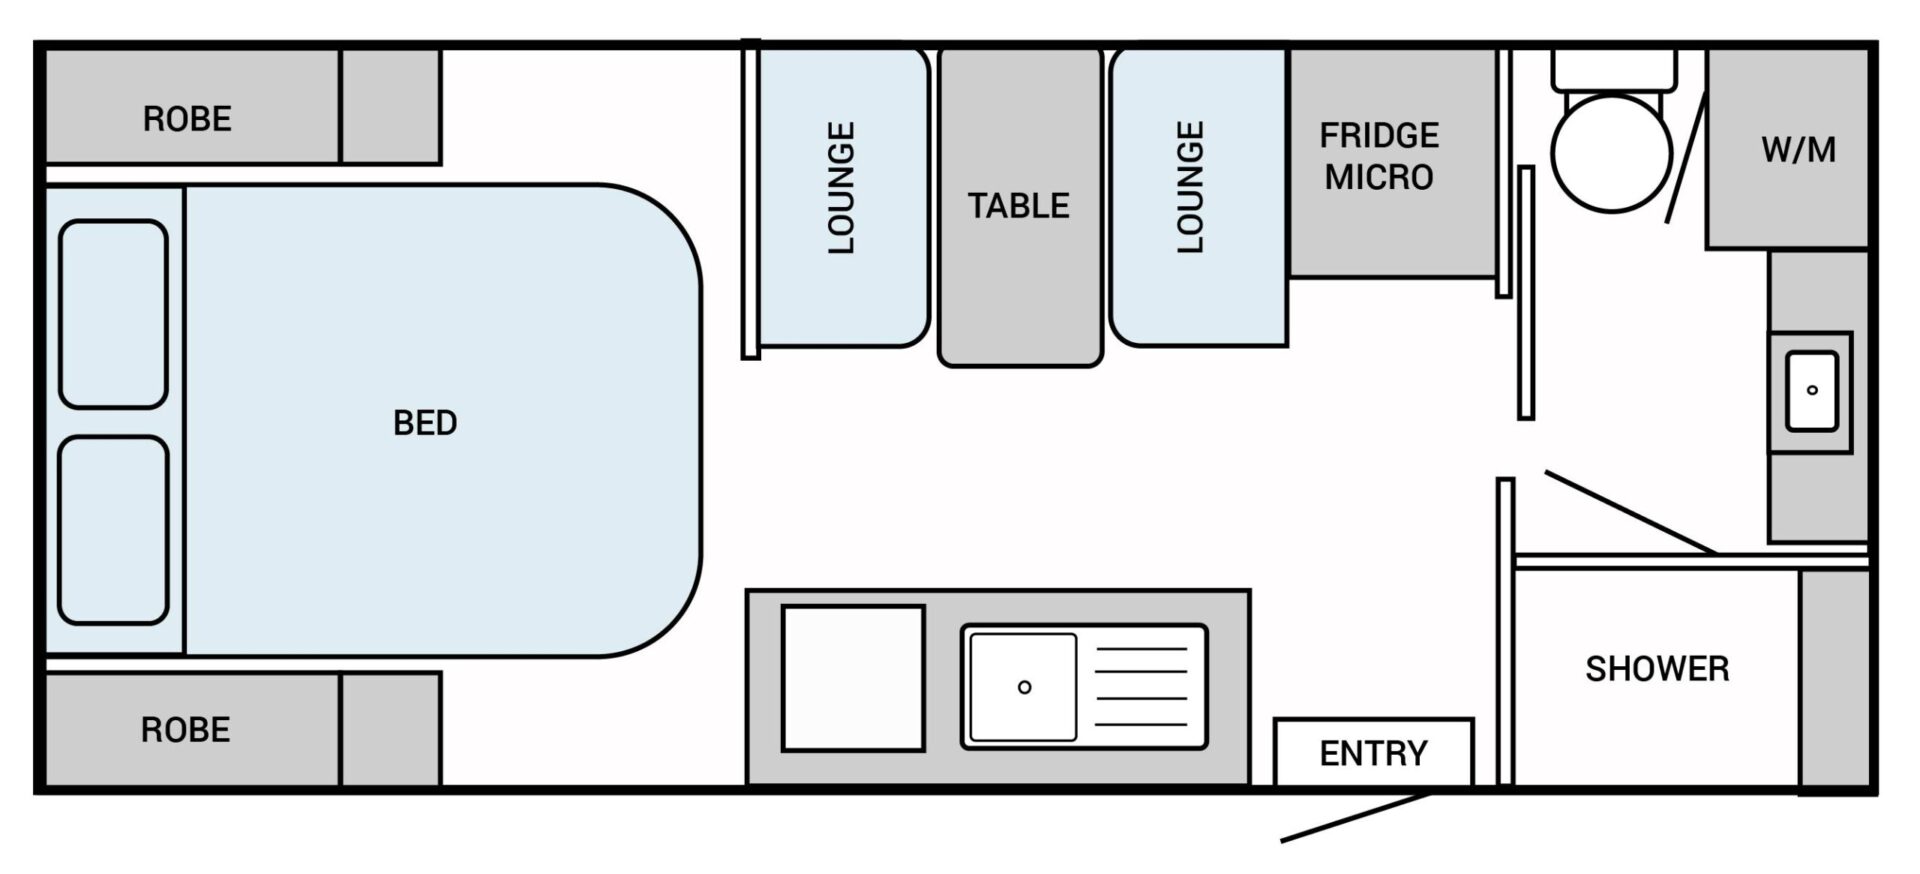 EXPLORER-186-Rear-Door-Cafe-Lounge